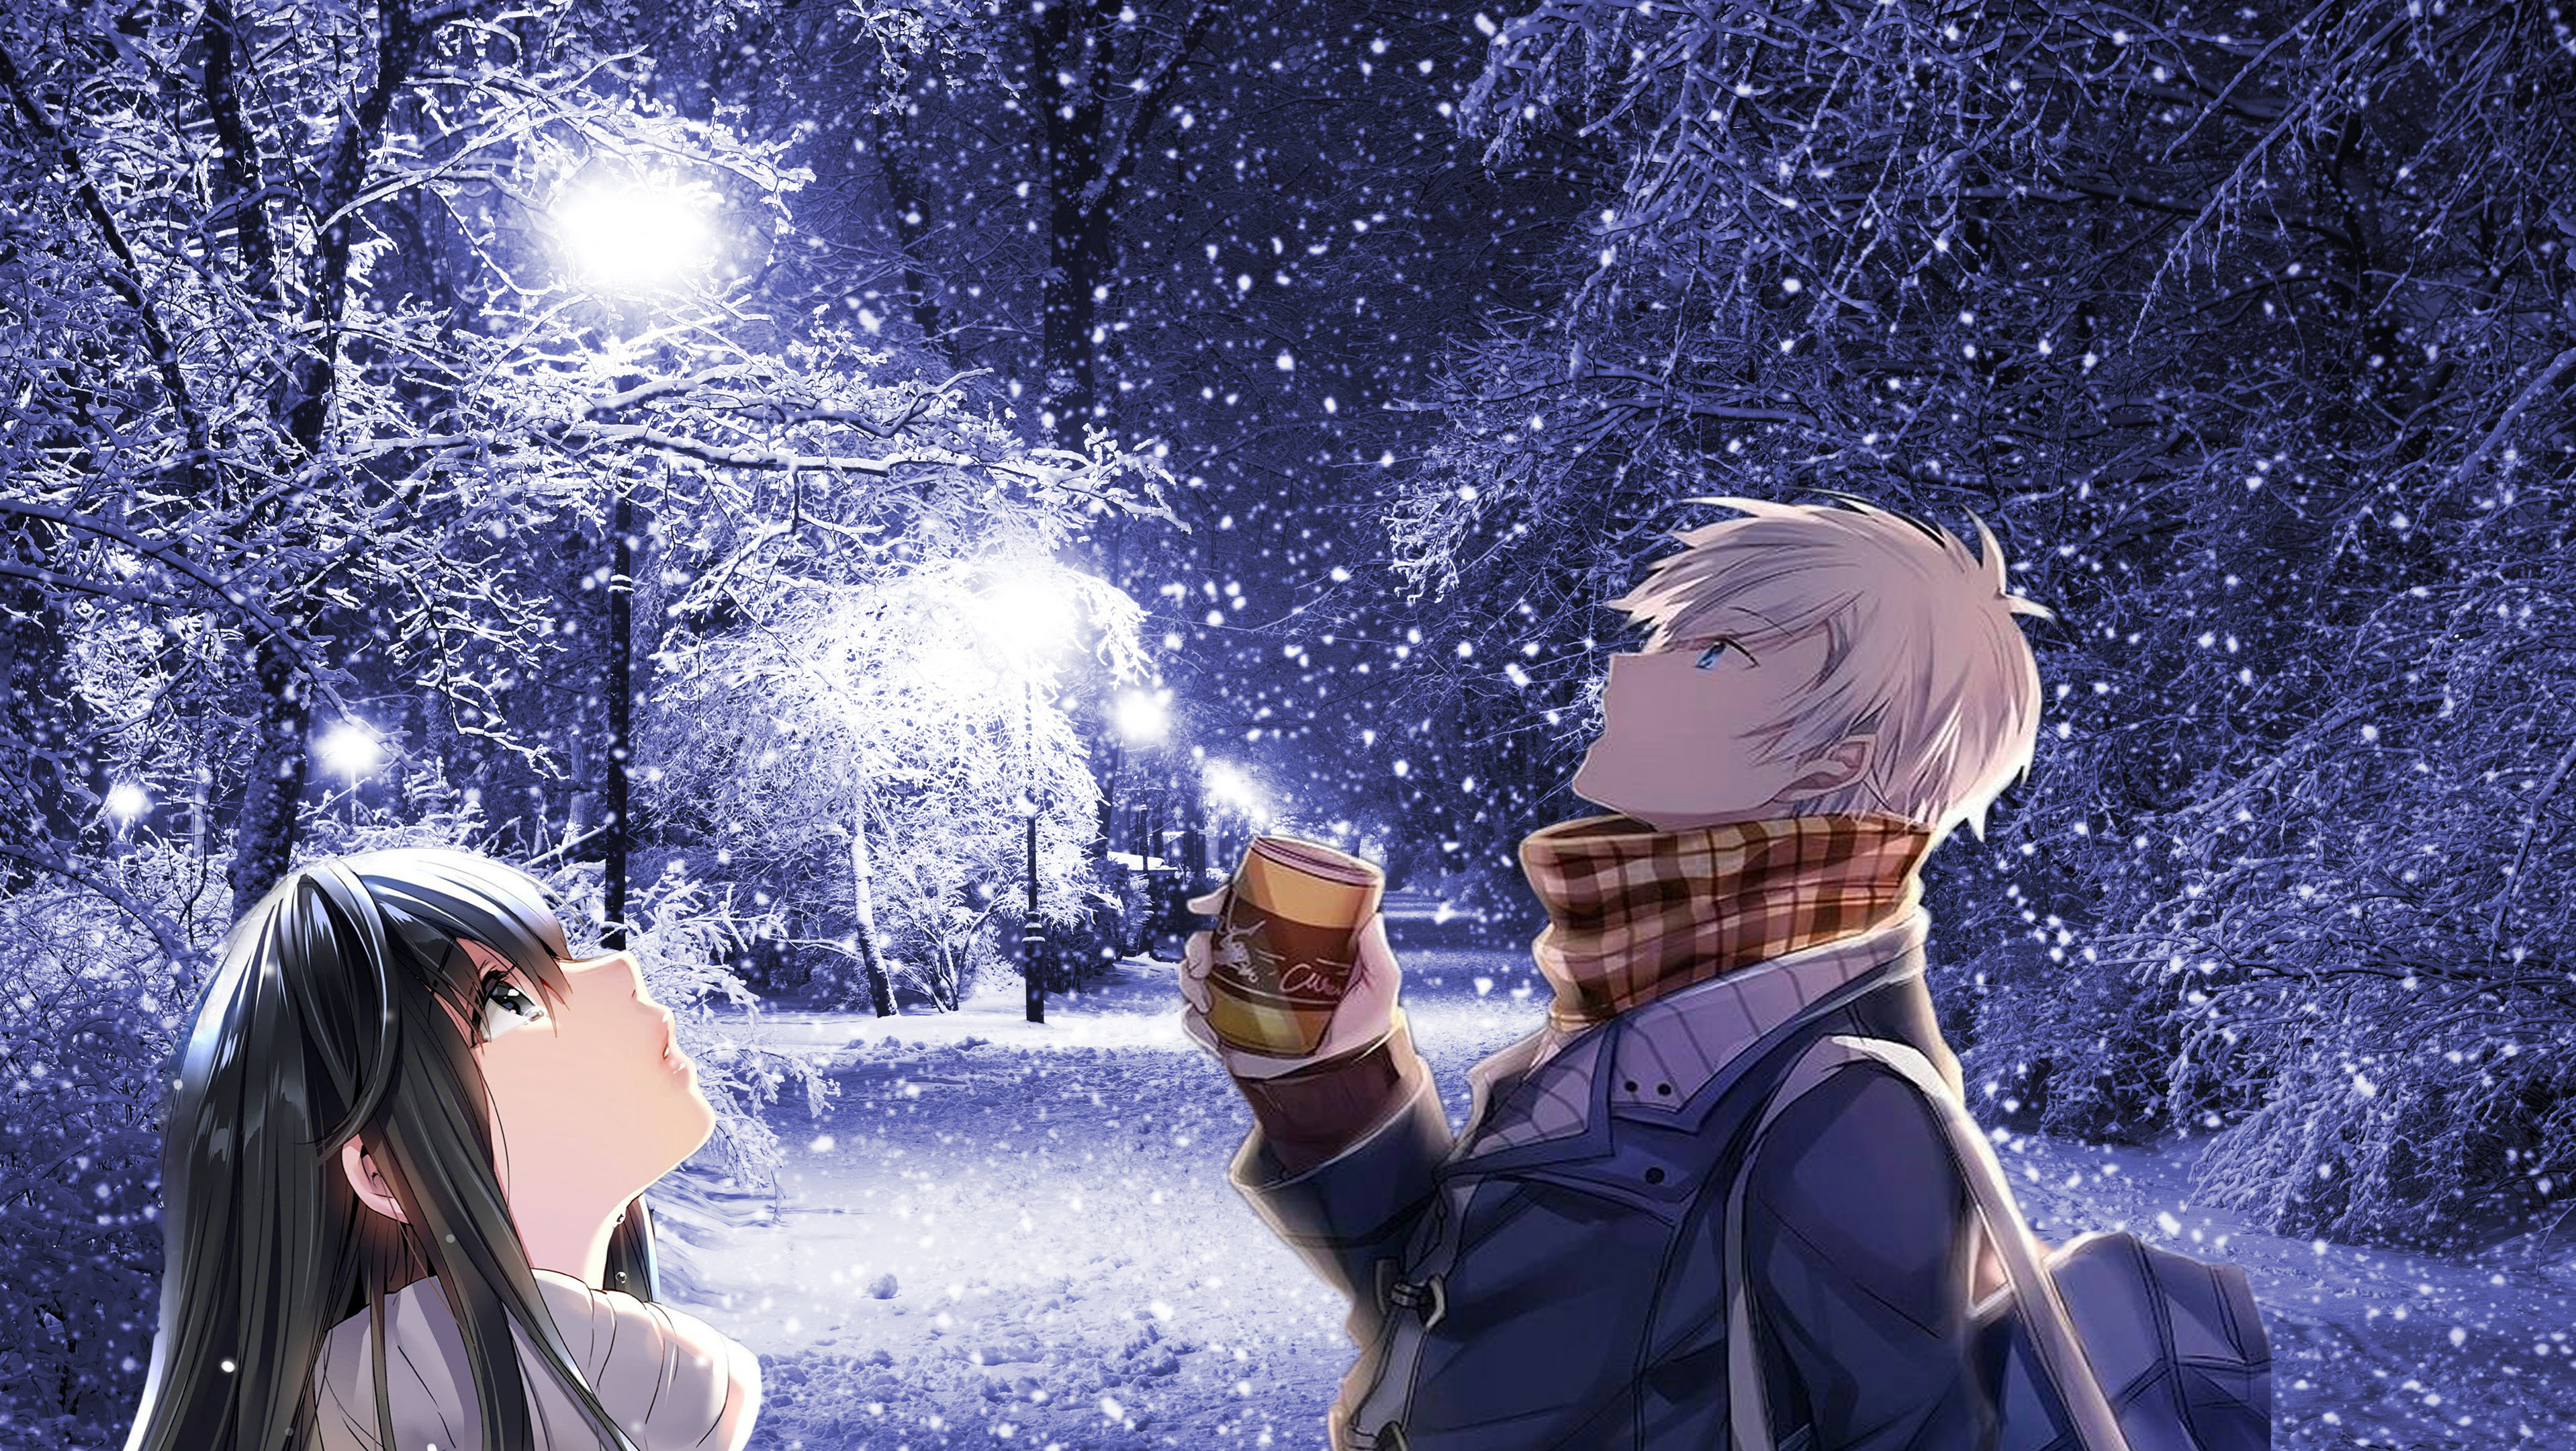 Anime mùa đông: Mùa đông không chỉ mang đến cho chúng ta những cảnh quan đẹp mà còn là thời điểm rất thích hợp để thưởng thức các bộ Anime liên quan đến mùa đông. Các nhân vật trong những bộ Anime này sẽ đem lại cho bạn những trải nghiệm thú vị và đầy sự bất ngờ.